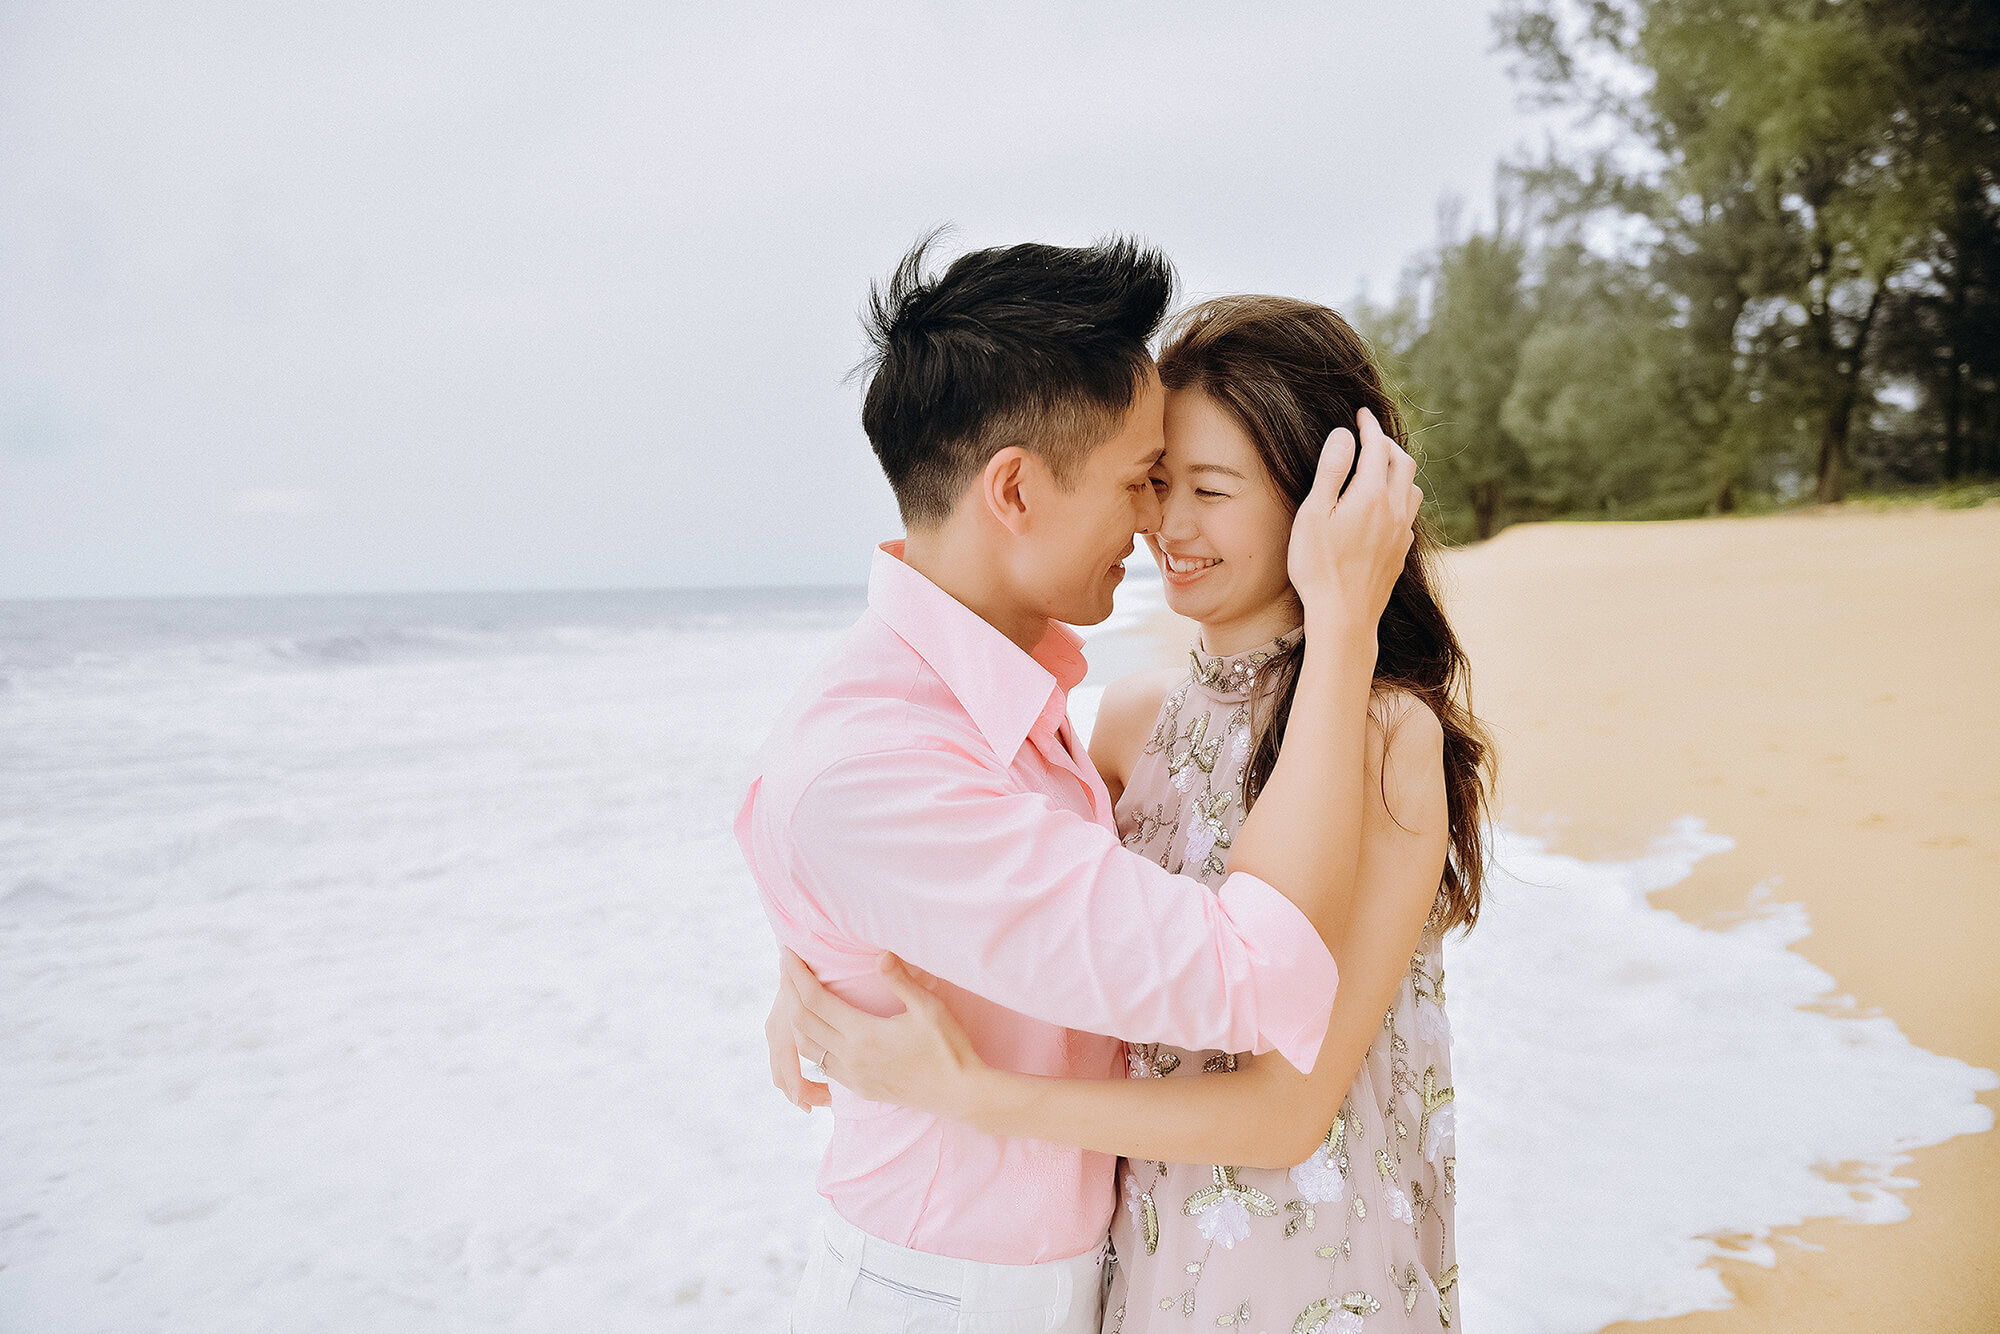 Professional honeymoon photographer in Phuket